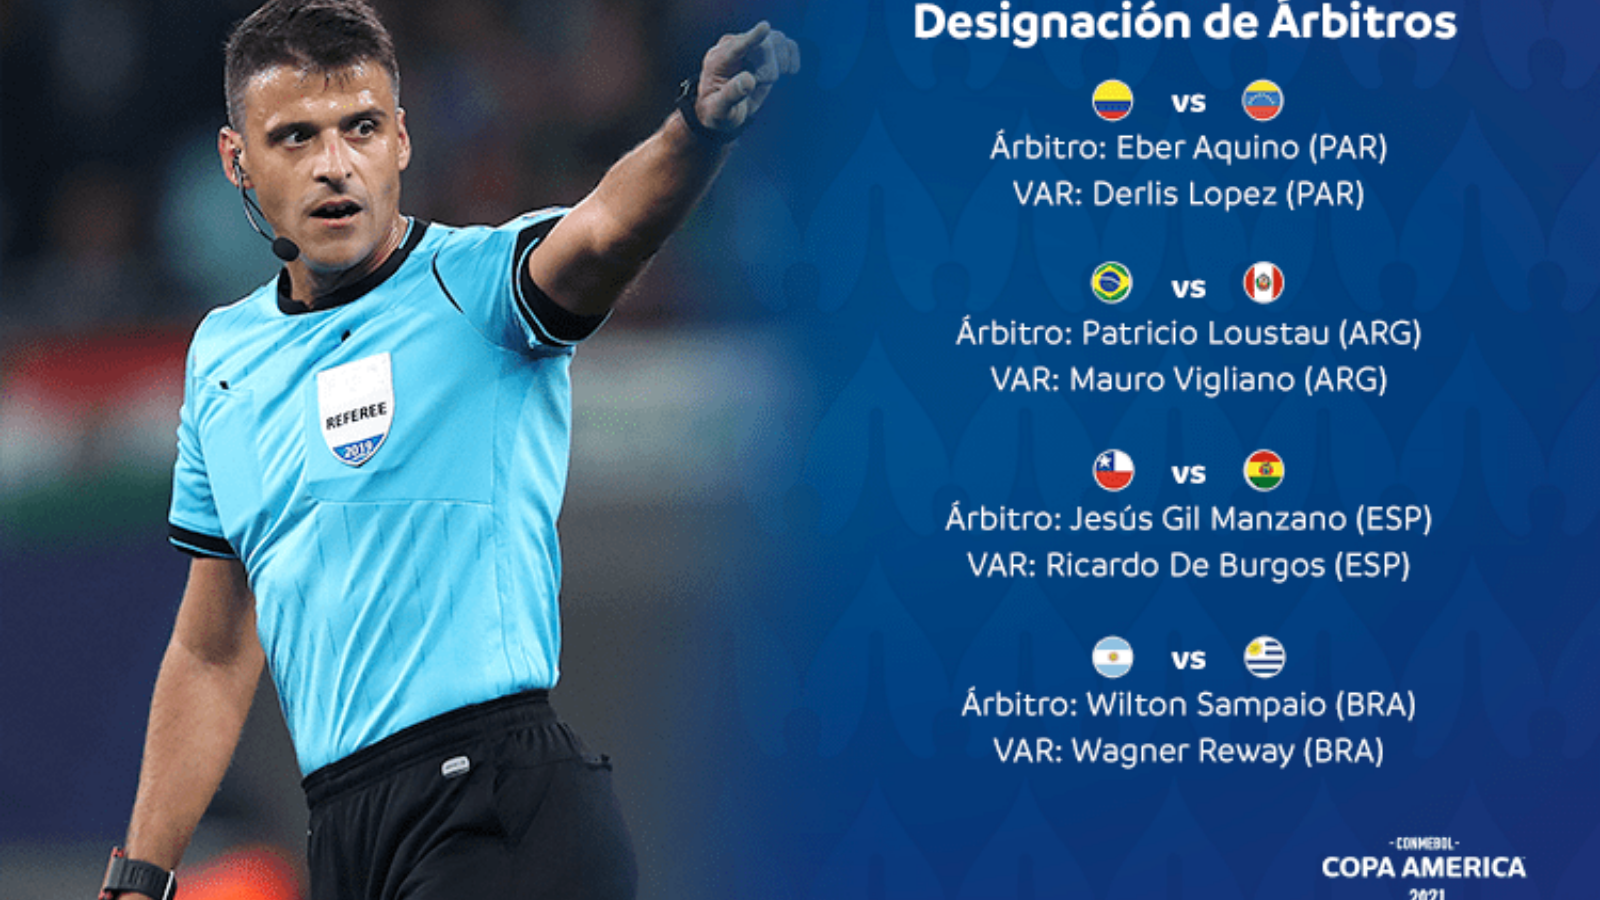 Designan árbitros para jornada 2 de la Copa América - Club Deportes Sports  Weekly